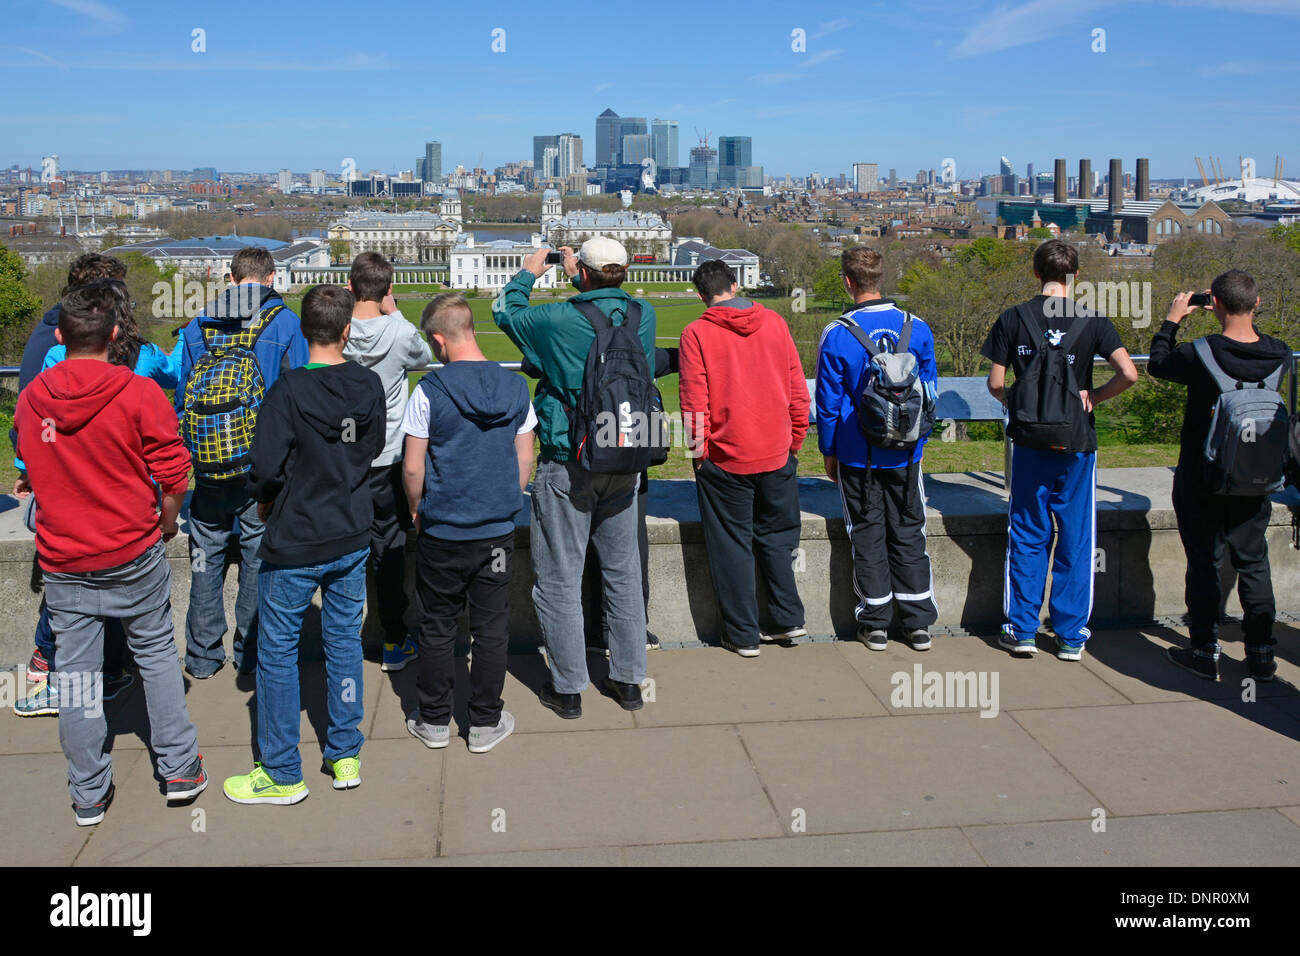 Gruppo di ragazzi studenti in visita educativa Greenwich Park E osservatorio in cima alla collina che guarda alla vista dello skyline di Canary Wharf Londra Inghilterra Regno Unito Foto Stock